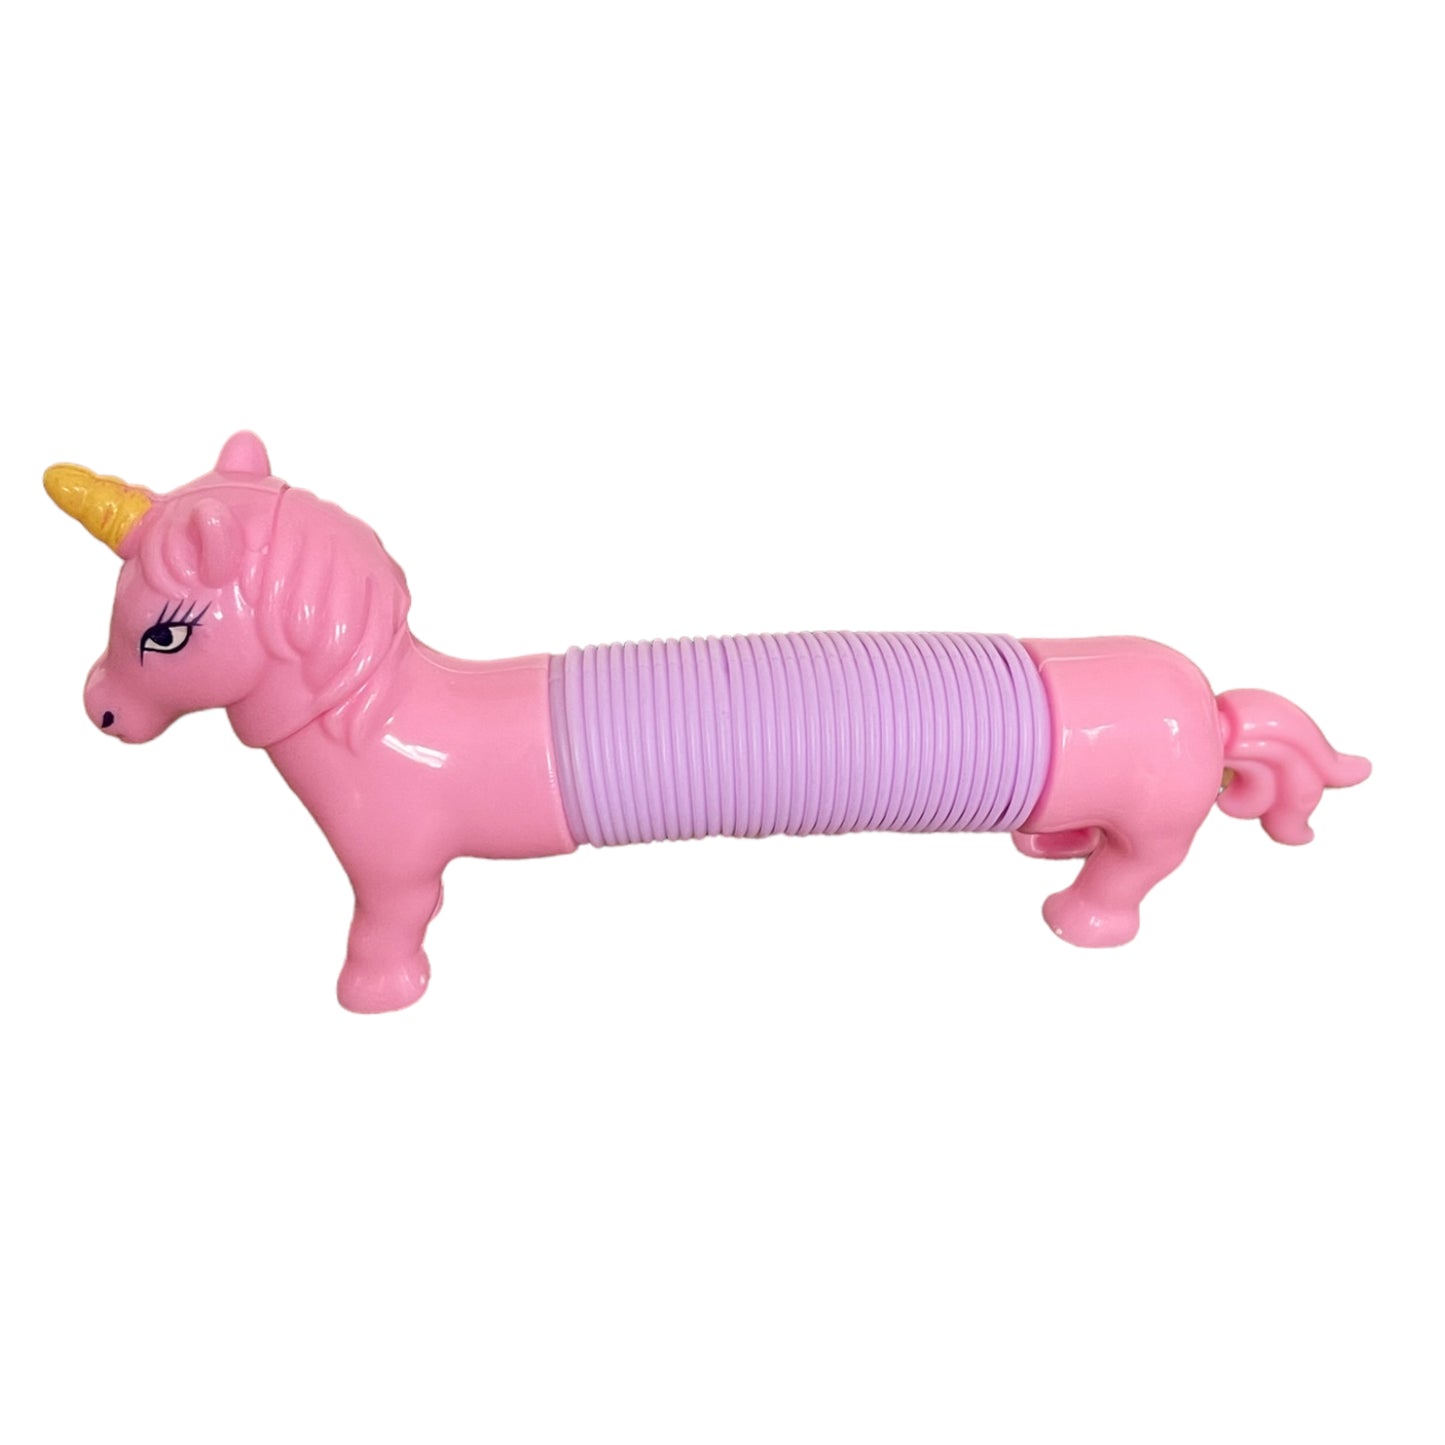 Stretch Spielzeug "Einhorn" in rosa